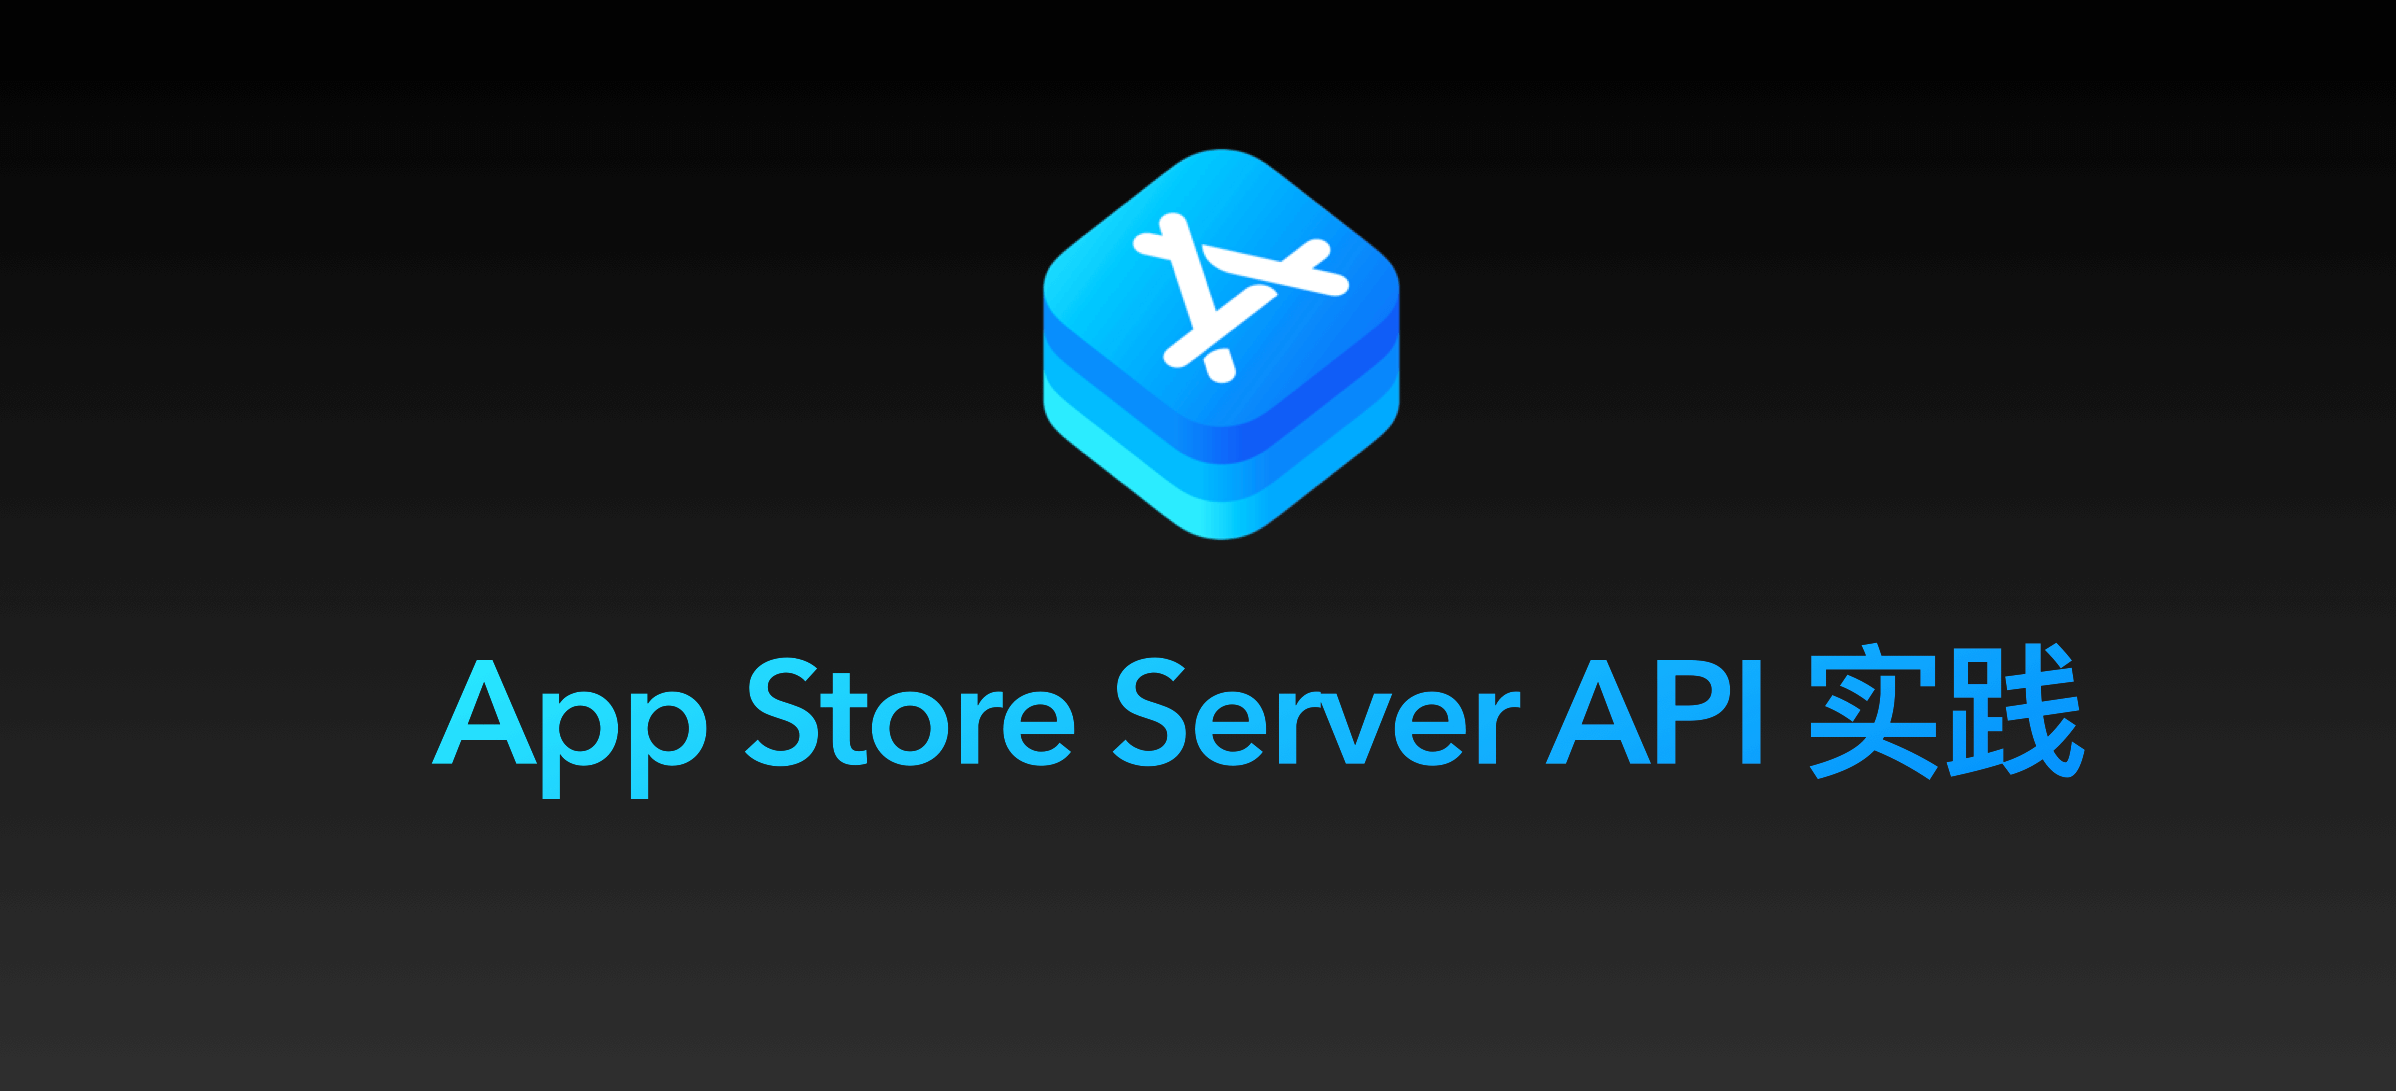 AppStoreServerAPI-00